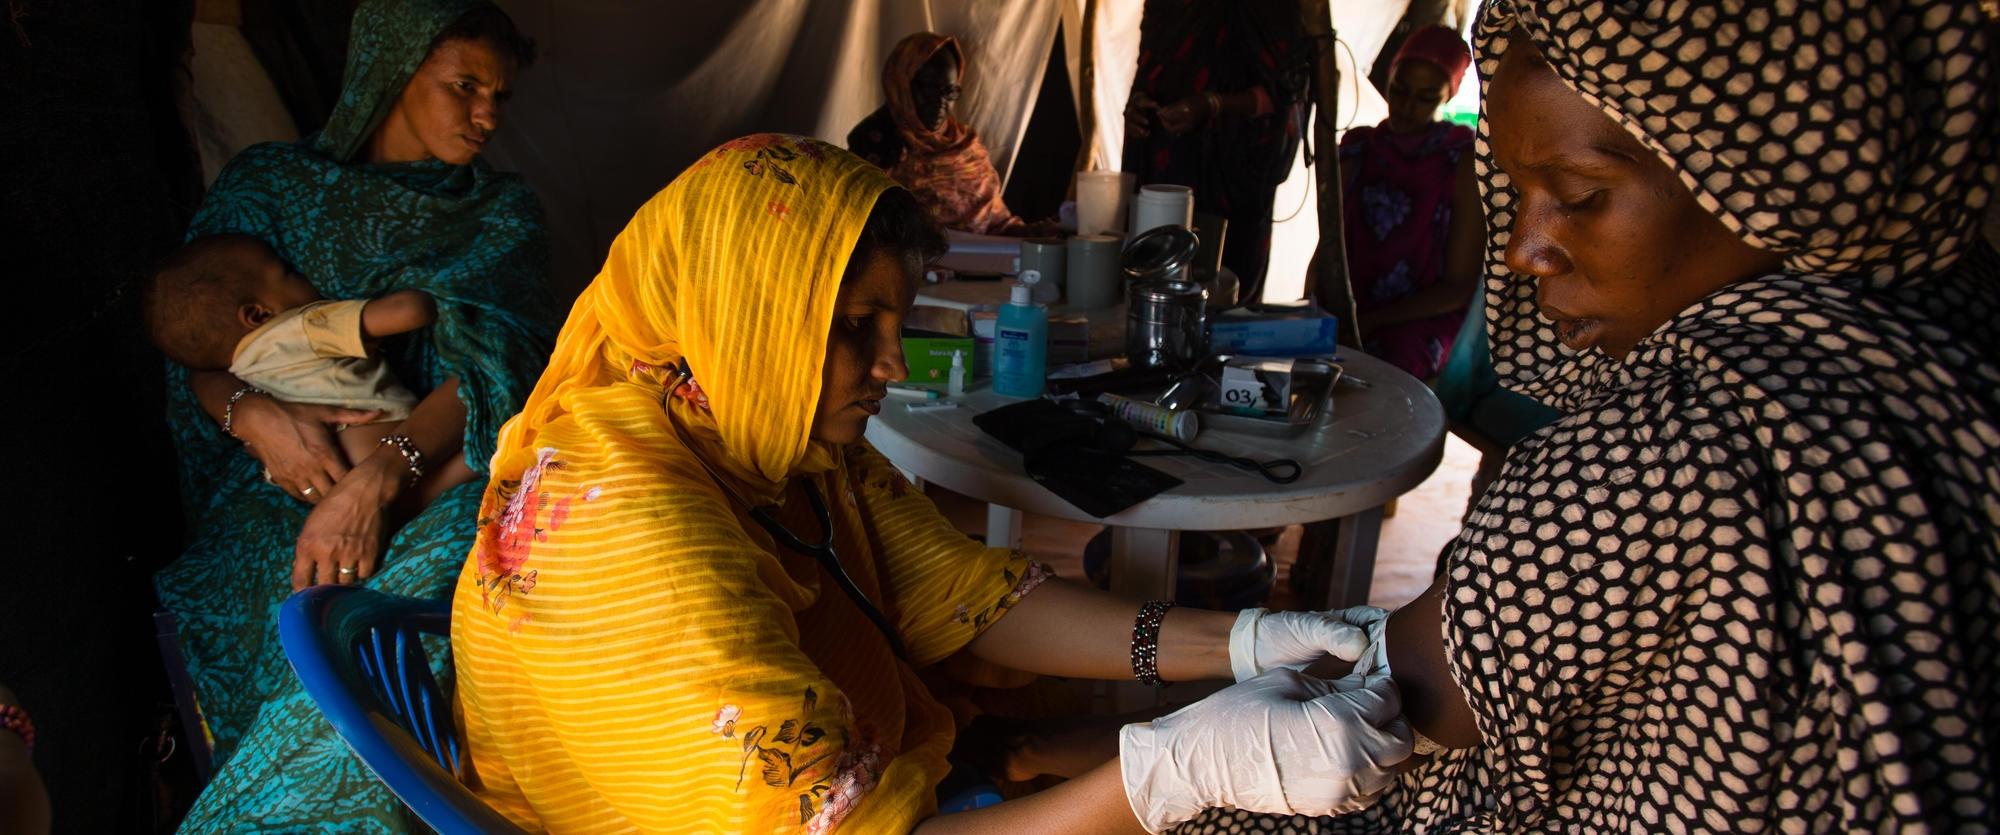 Prise de la tension artérielle d'une patiente dans la tente de maternité de l'hôpital de Médecins Sans Frontières dans le camp de réfugiés maliens de Mbera, en Mauritanie en mars 2013.